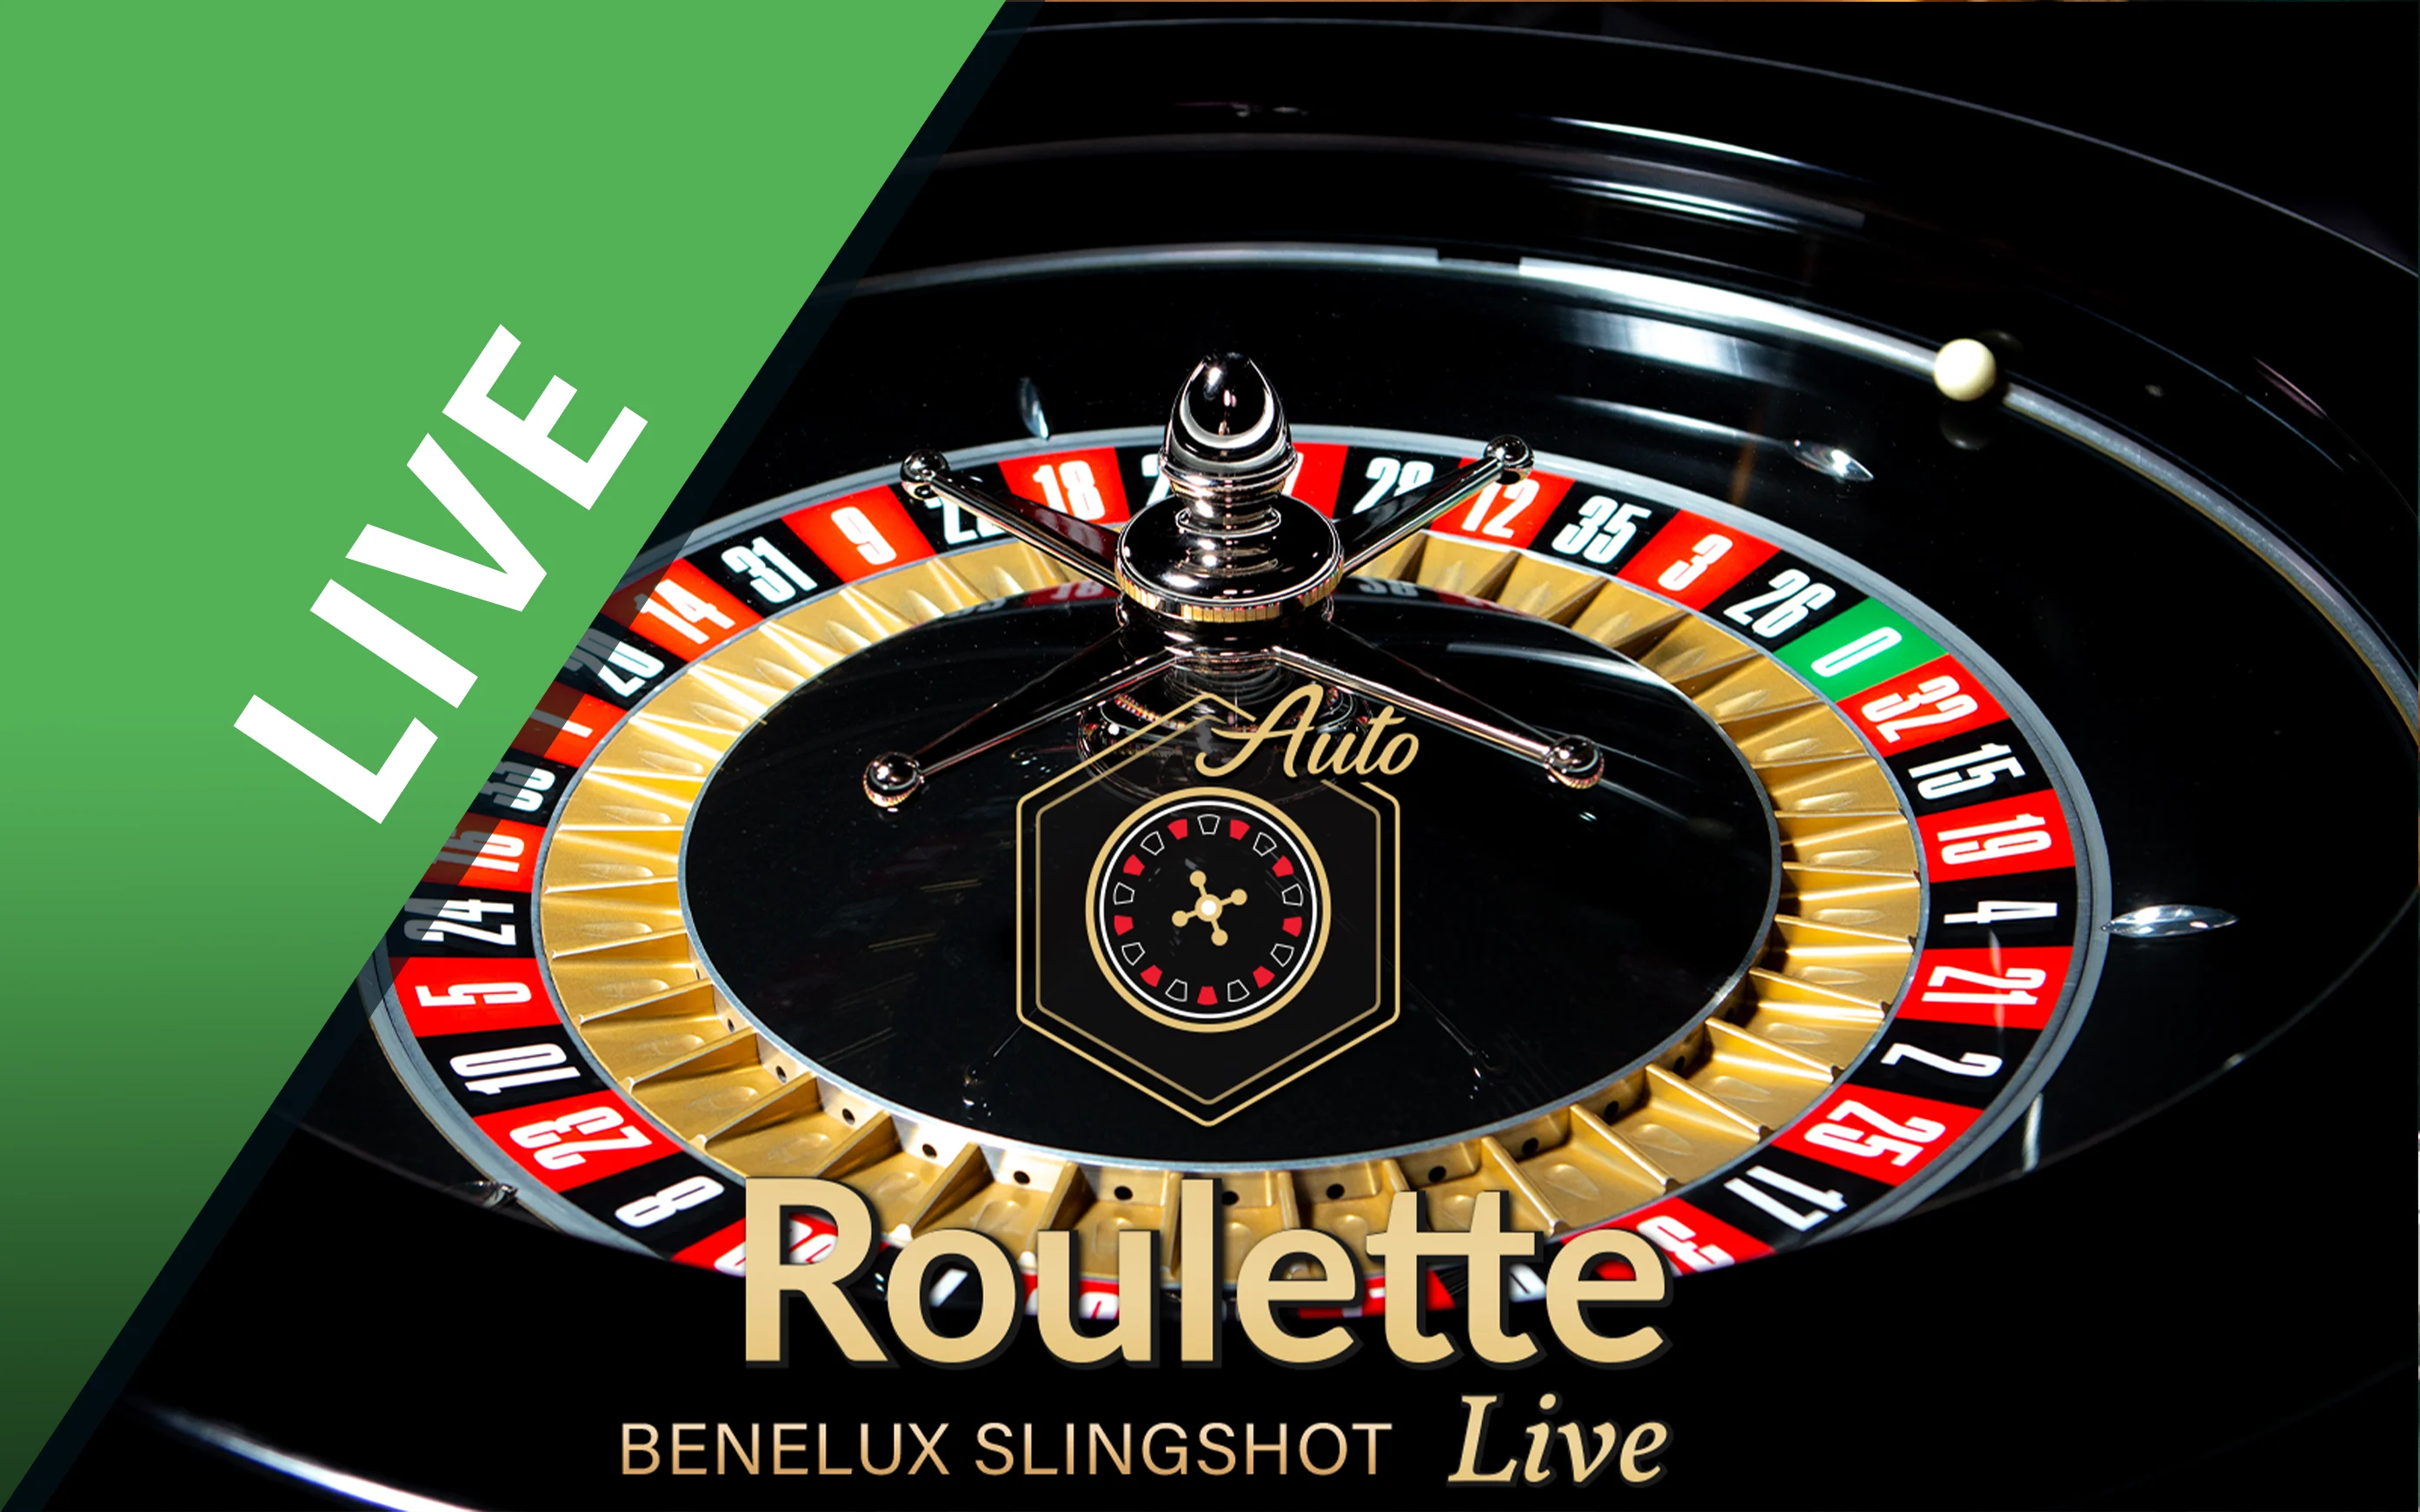 Chơi Benelux Slingshot Roulette trên sòng bạc trực tuyến Starcasino.be